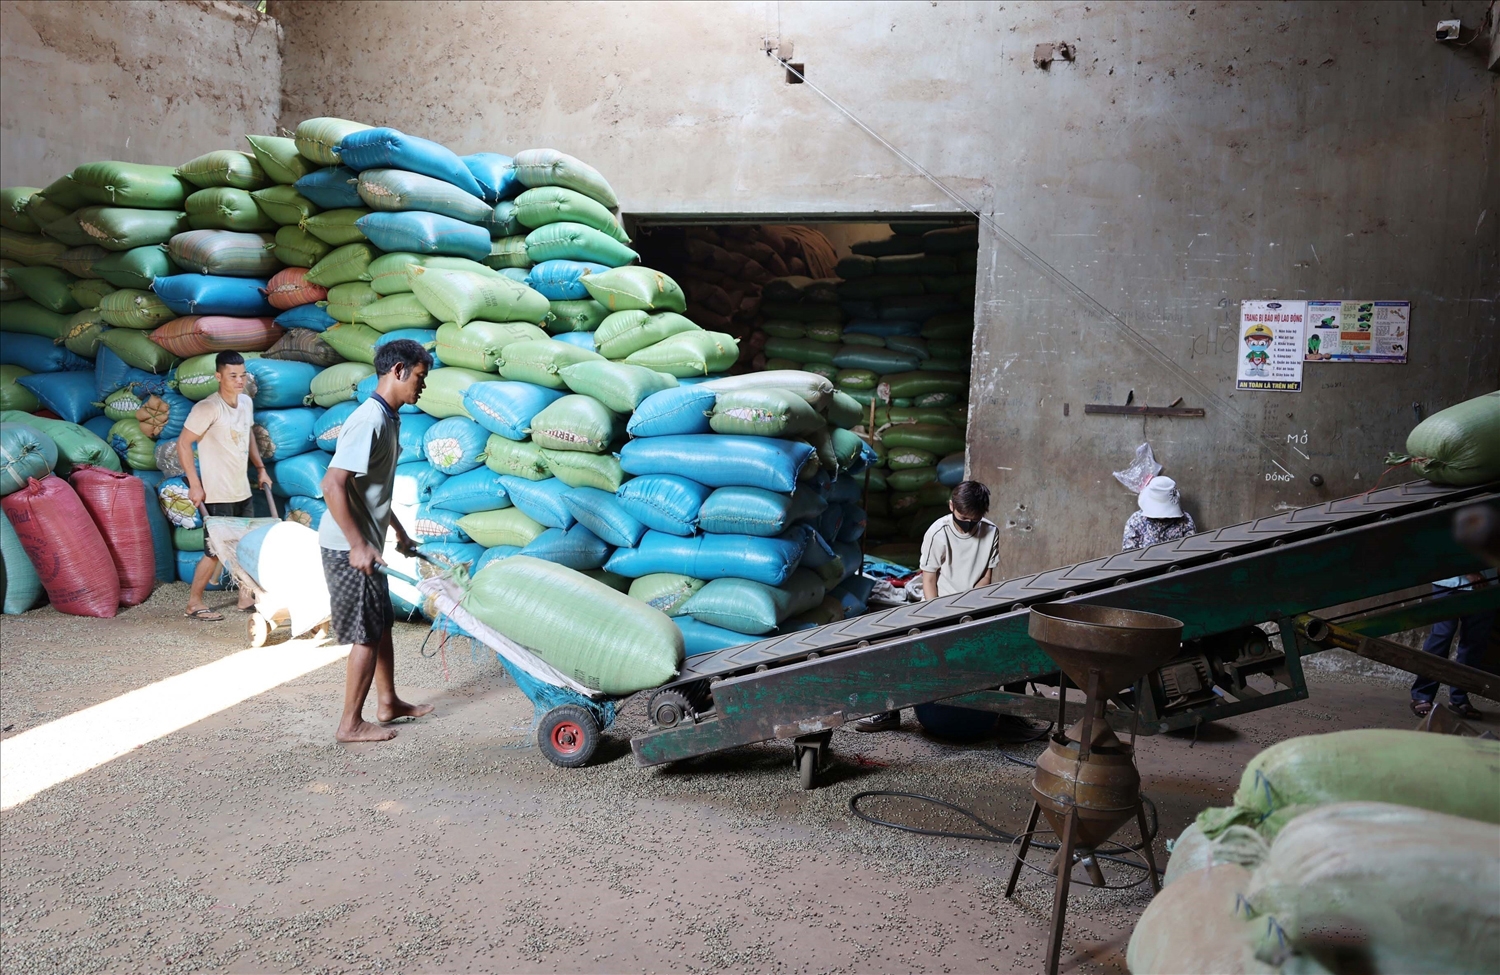 Một cơ sở kinh doanh nông sản ở thị trấn Quảng Phú, huyện Cư M’Gar, tỉnh Đắk Lắk thu mua 20 tấn tiêu mỗi ngày, giảm 20 - 30 tấn/ngày so với các năm trước (Ảnh: Hoài Thu).